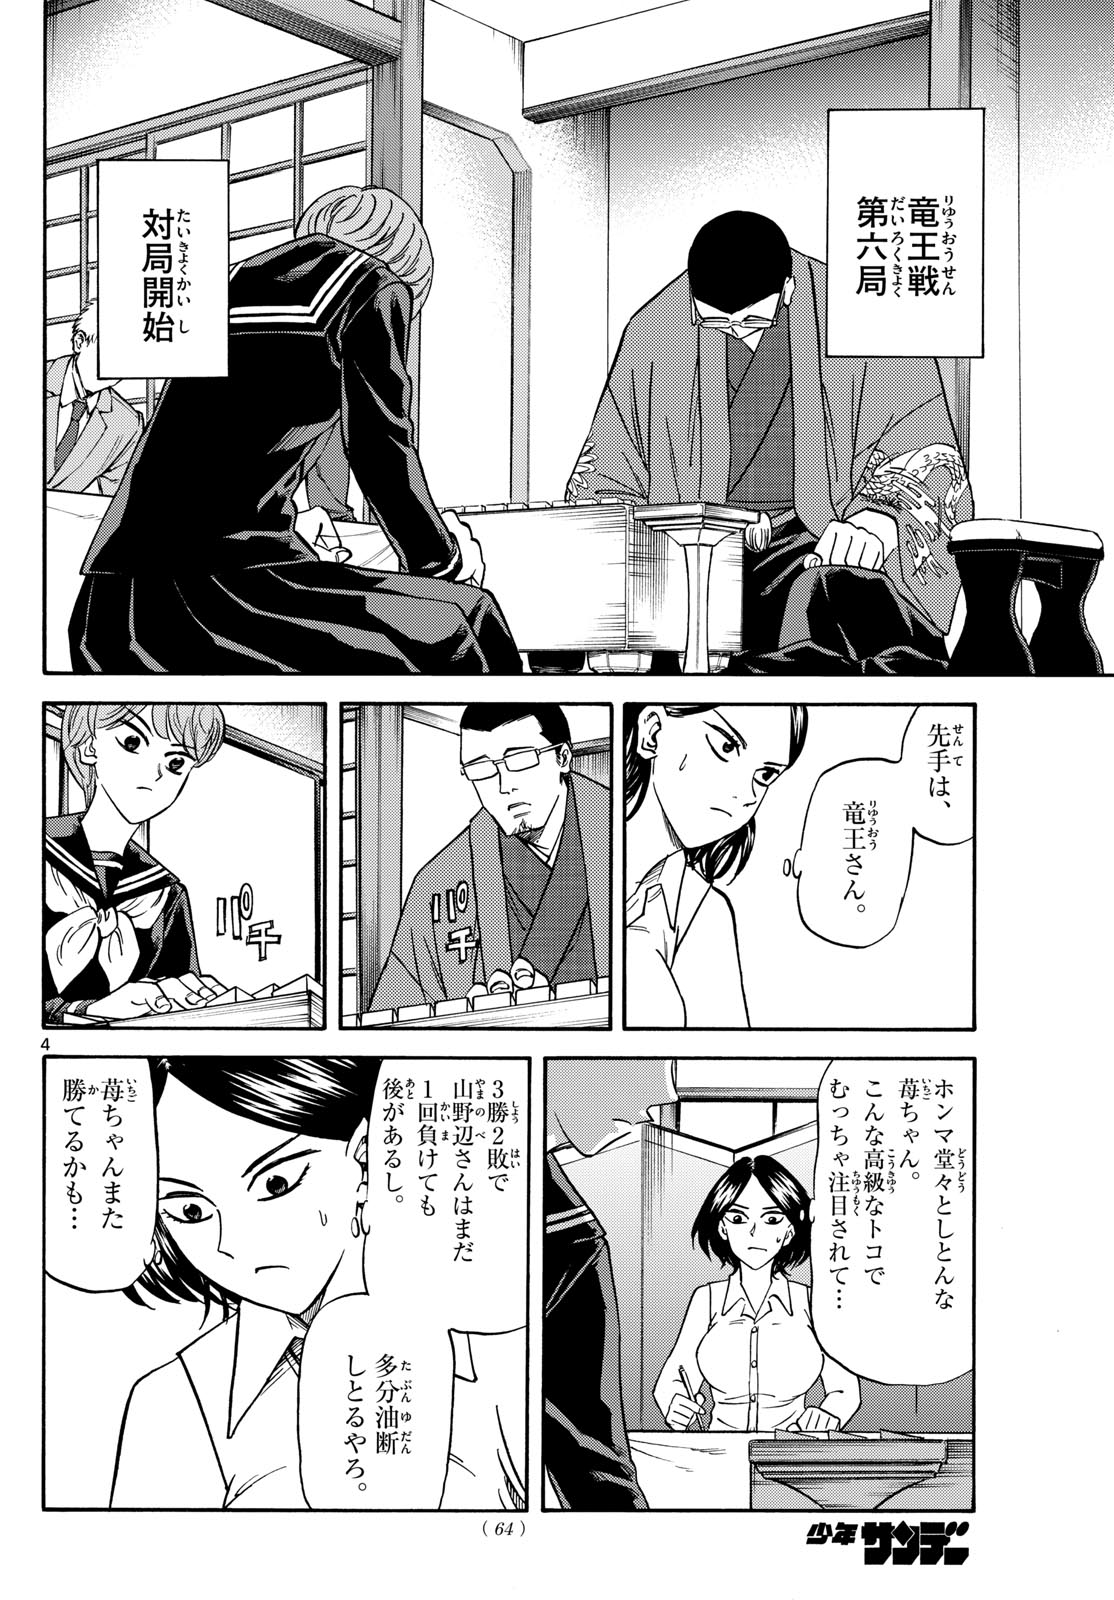 Tatsu to Ichigo - Chapter 169 - Page 4